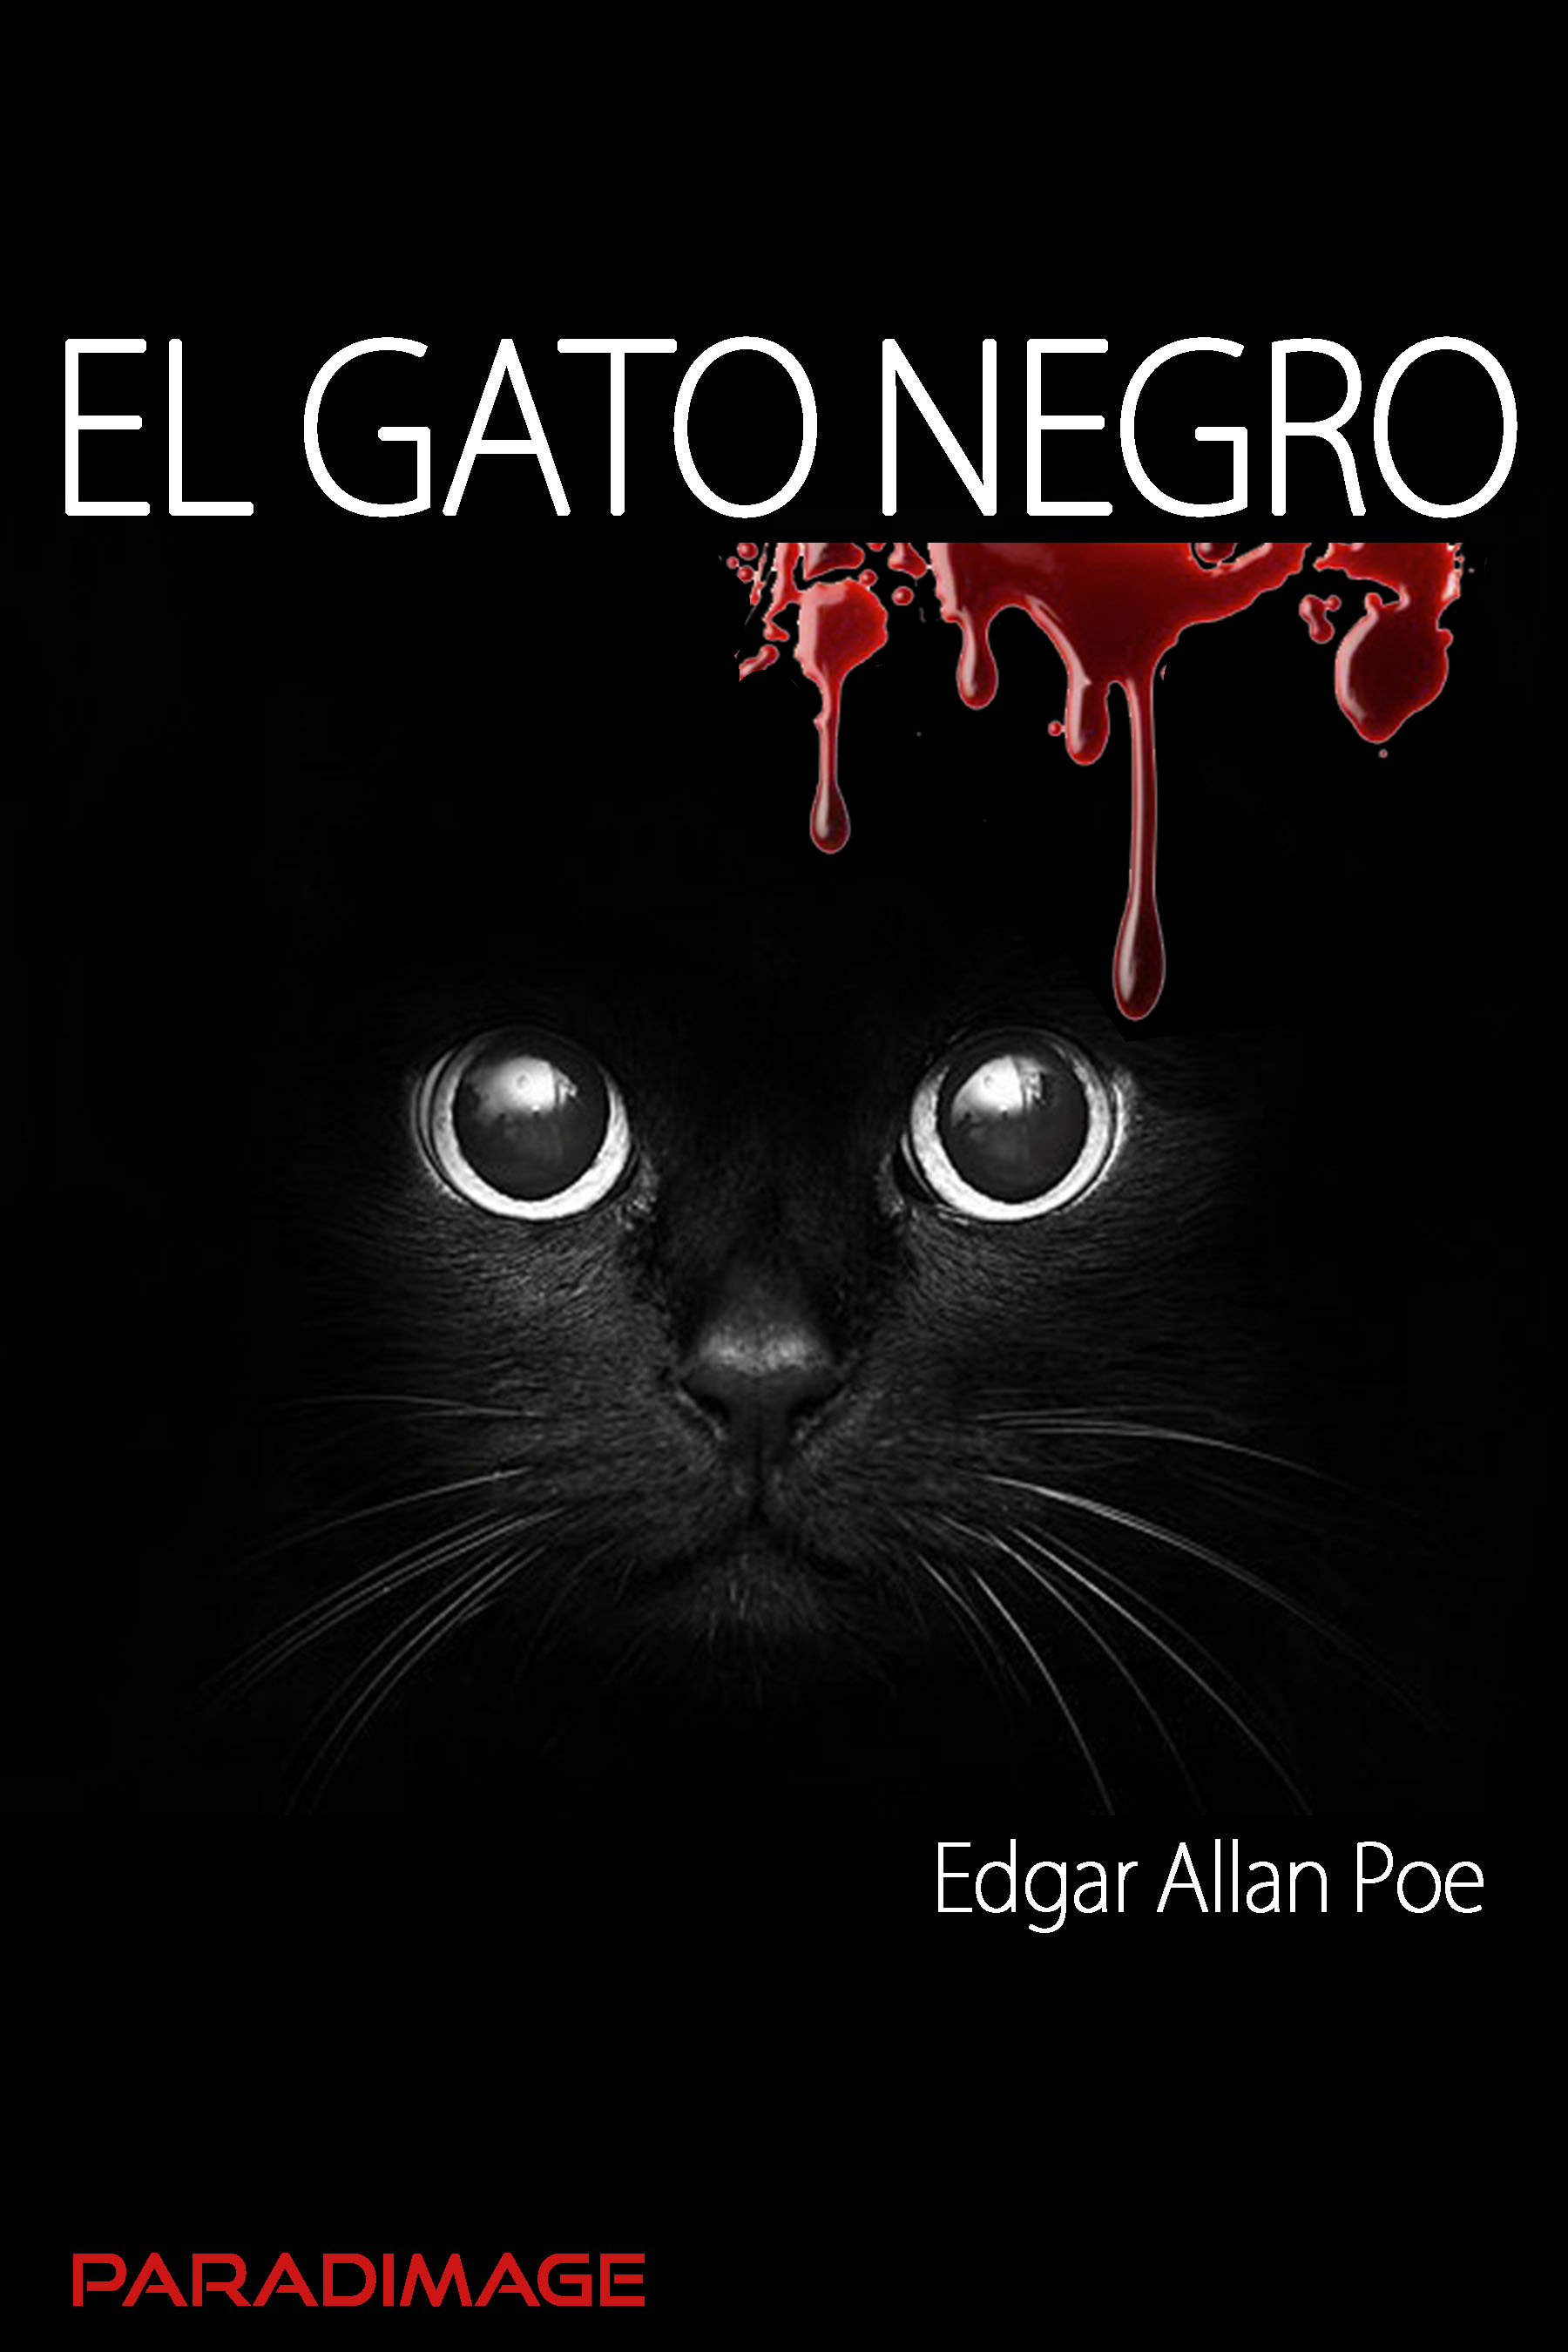 Desde allí Materialismo Exención Ebook El Gato Negro por Edgar Allan Poe - 7Switch